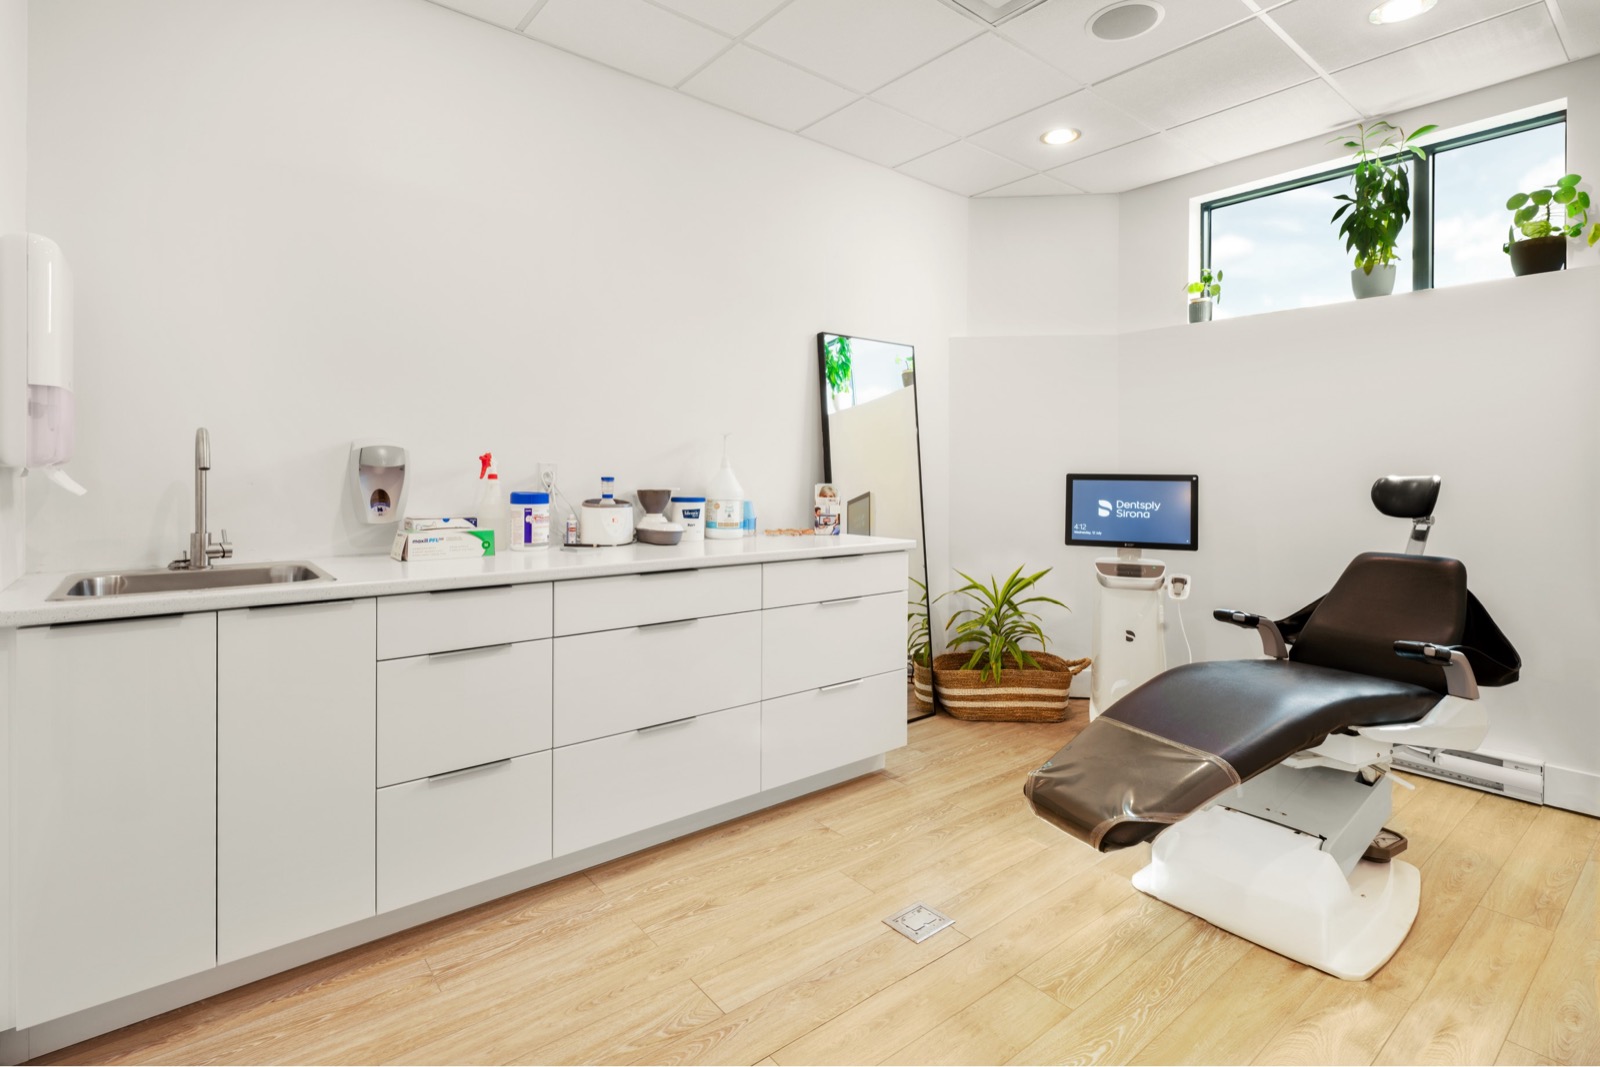 Digital denture exam room at Dieppe Denture Clinic